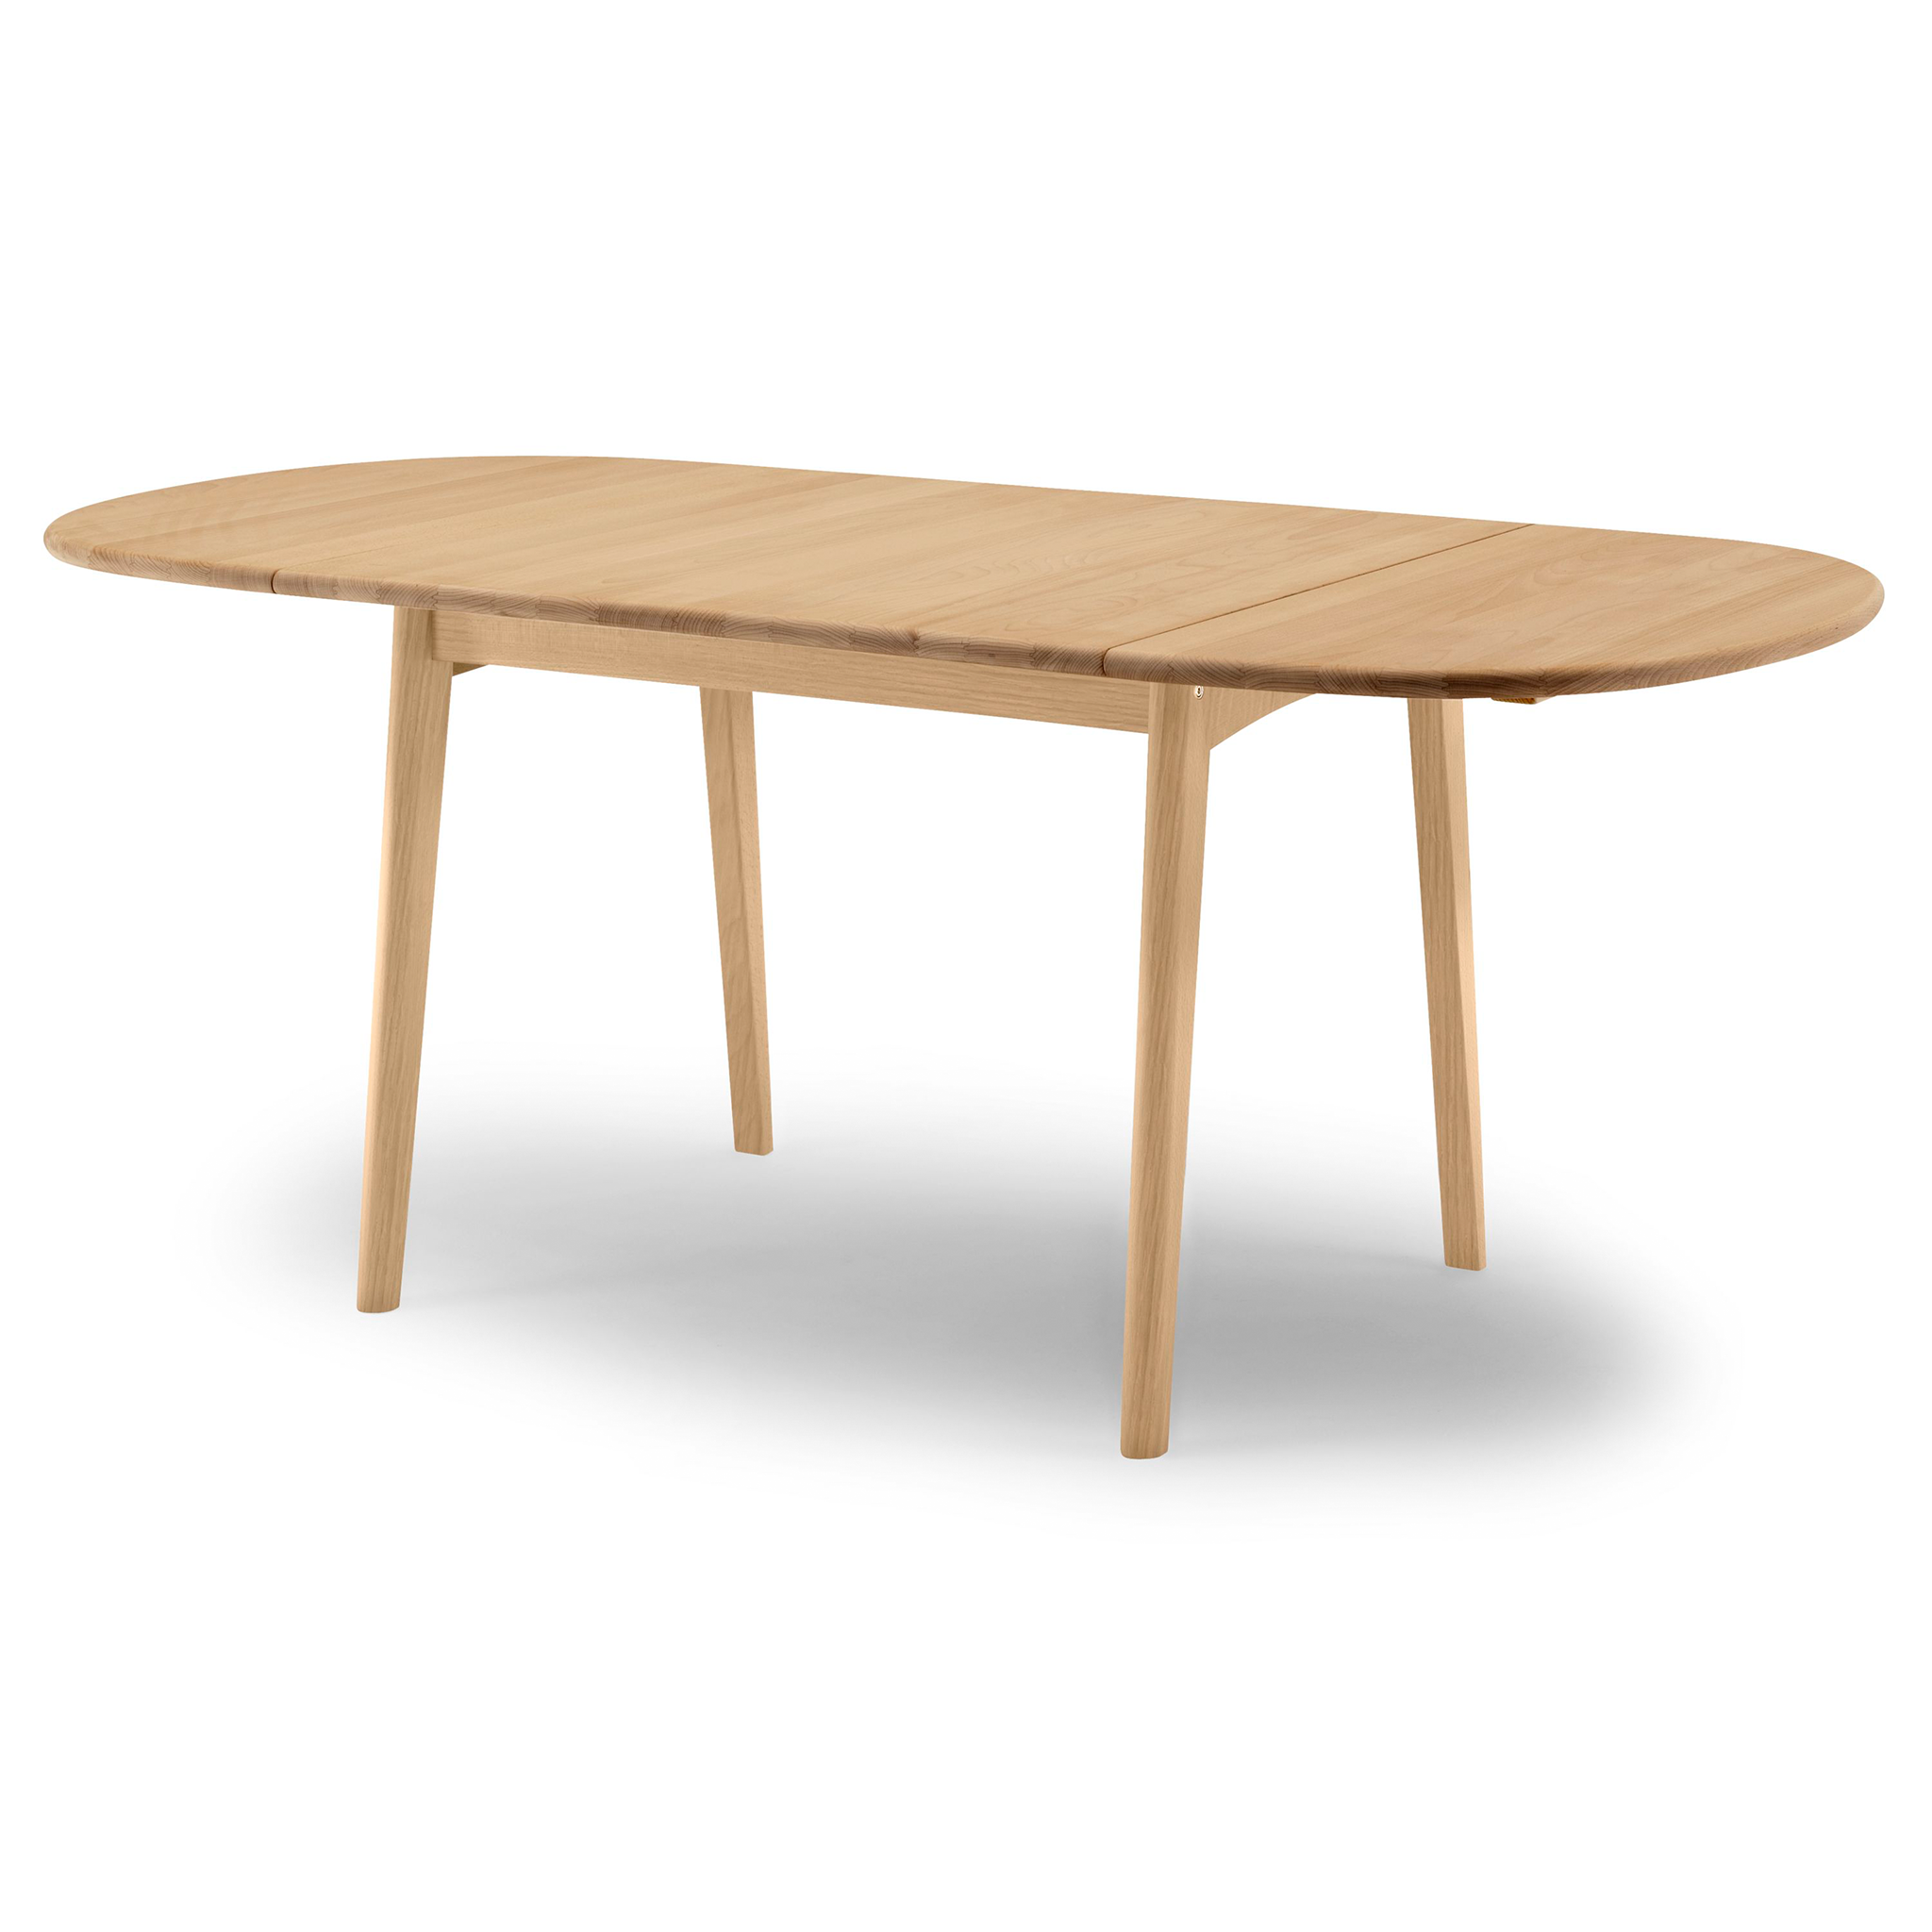 CH002 Table by Carl Hansen & Søn